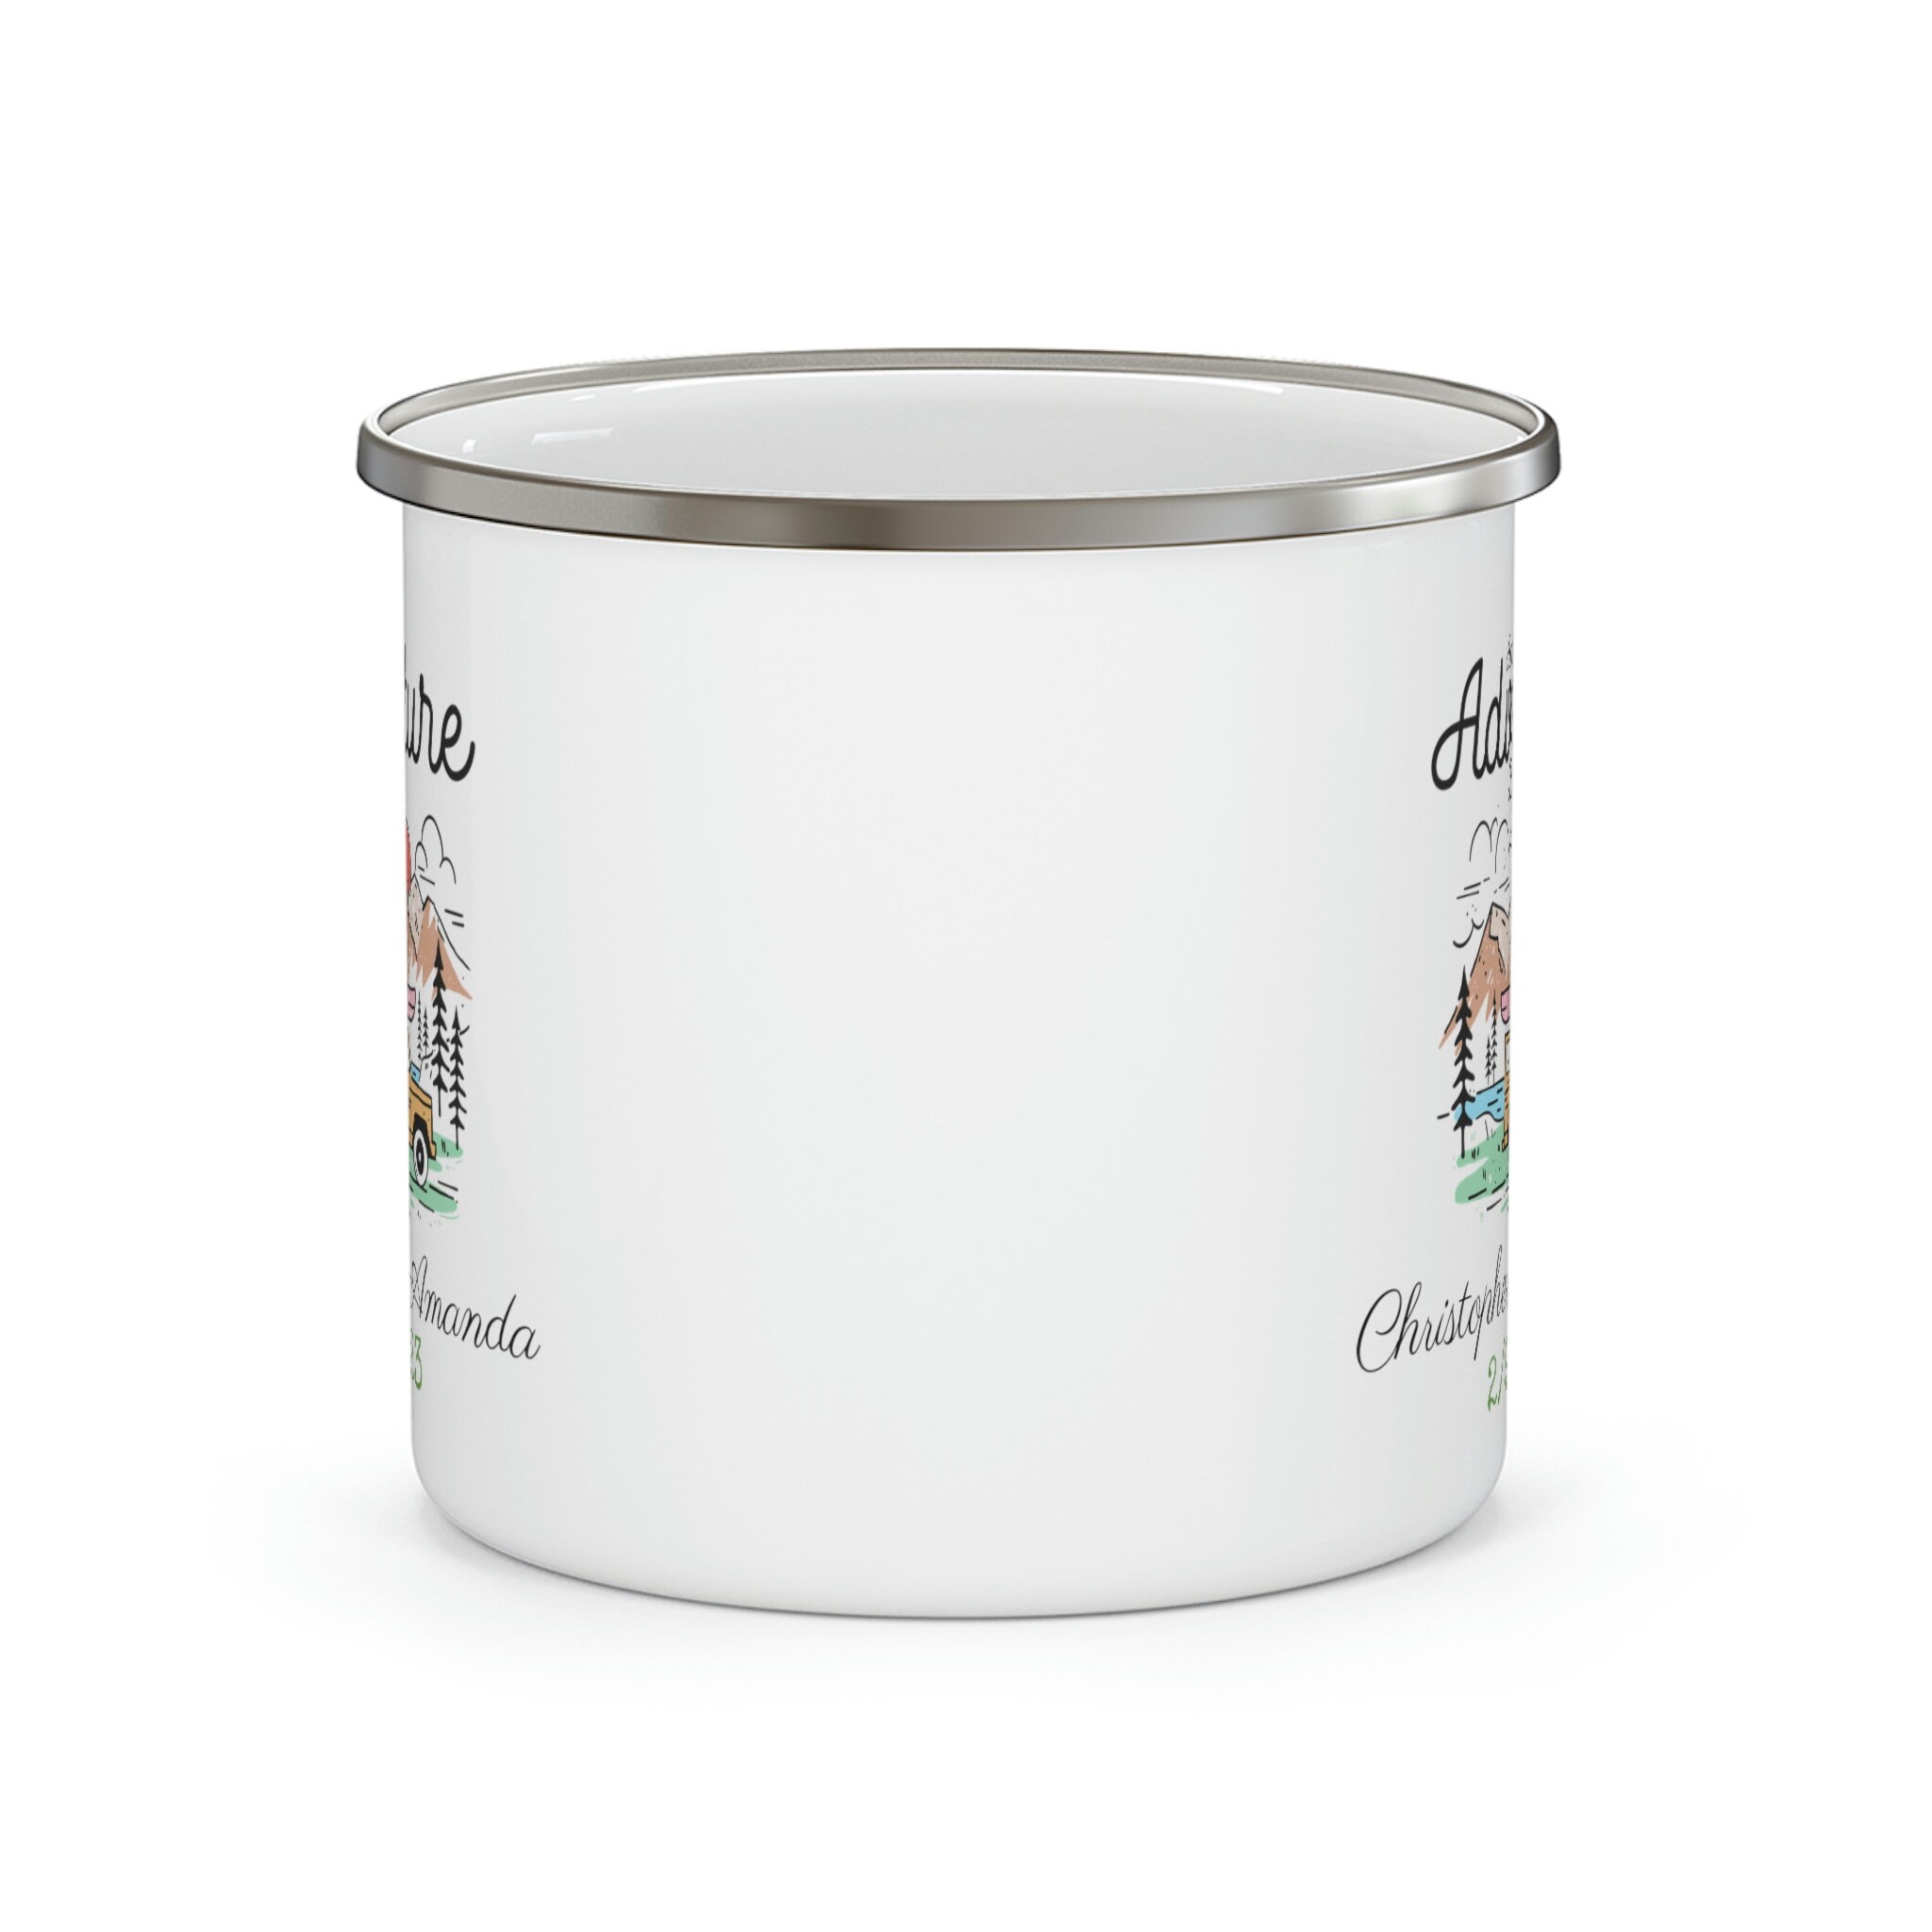 The adventurer enamel mug (small) — Campfire Coffee